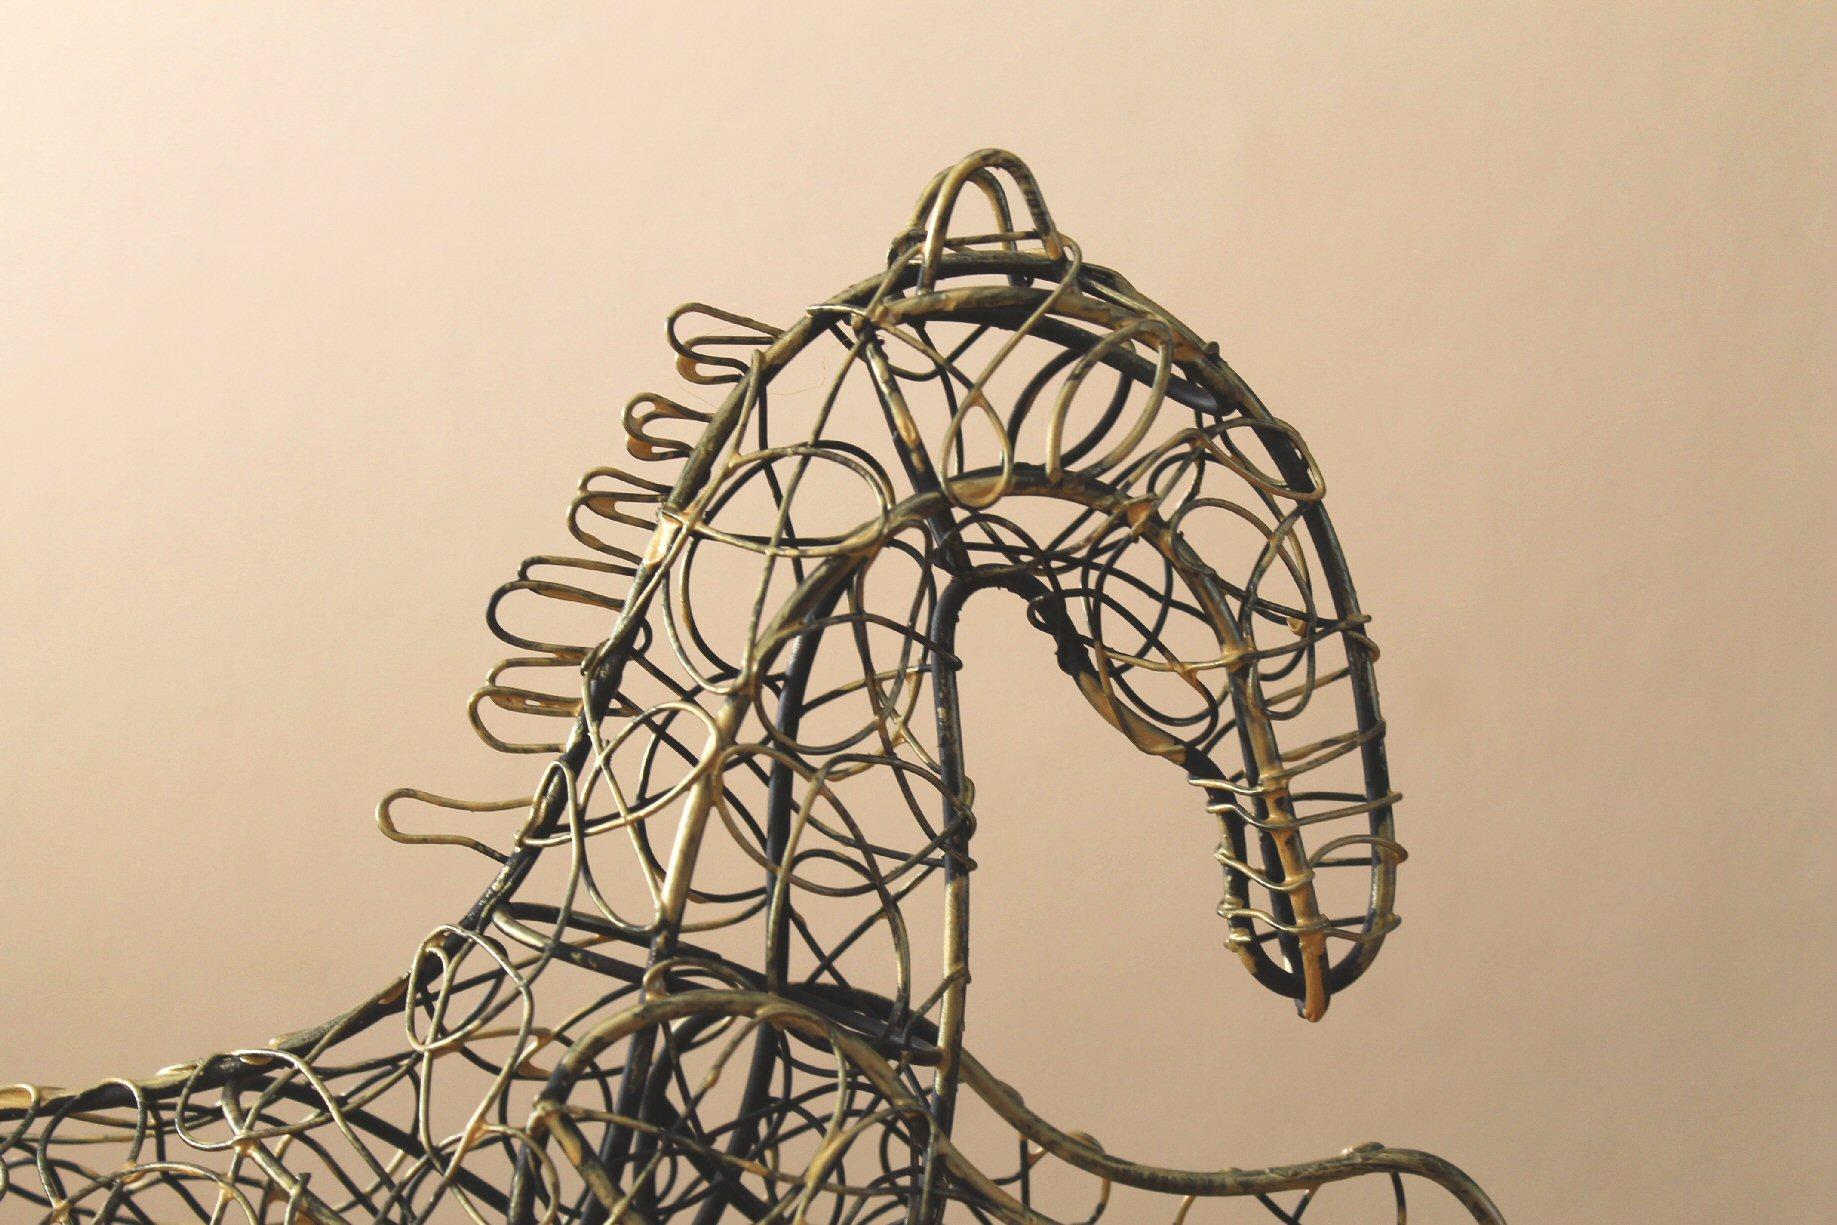 Frederic Weinberg !

Moderne du milieu du siècle
Sculpture de cheval en fil de fer !
Art abstrait !

Finition en fil de fer polychromé remarquable !

Dimensions : 13